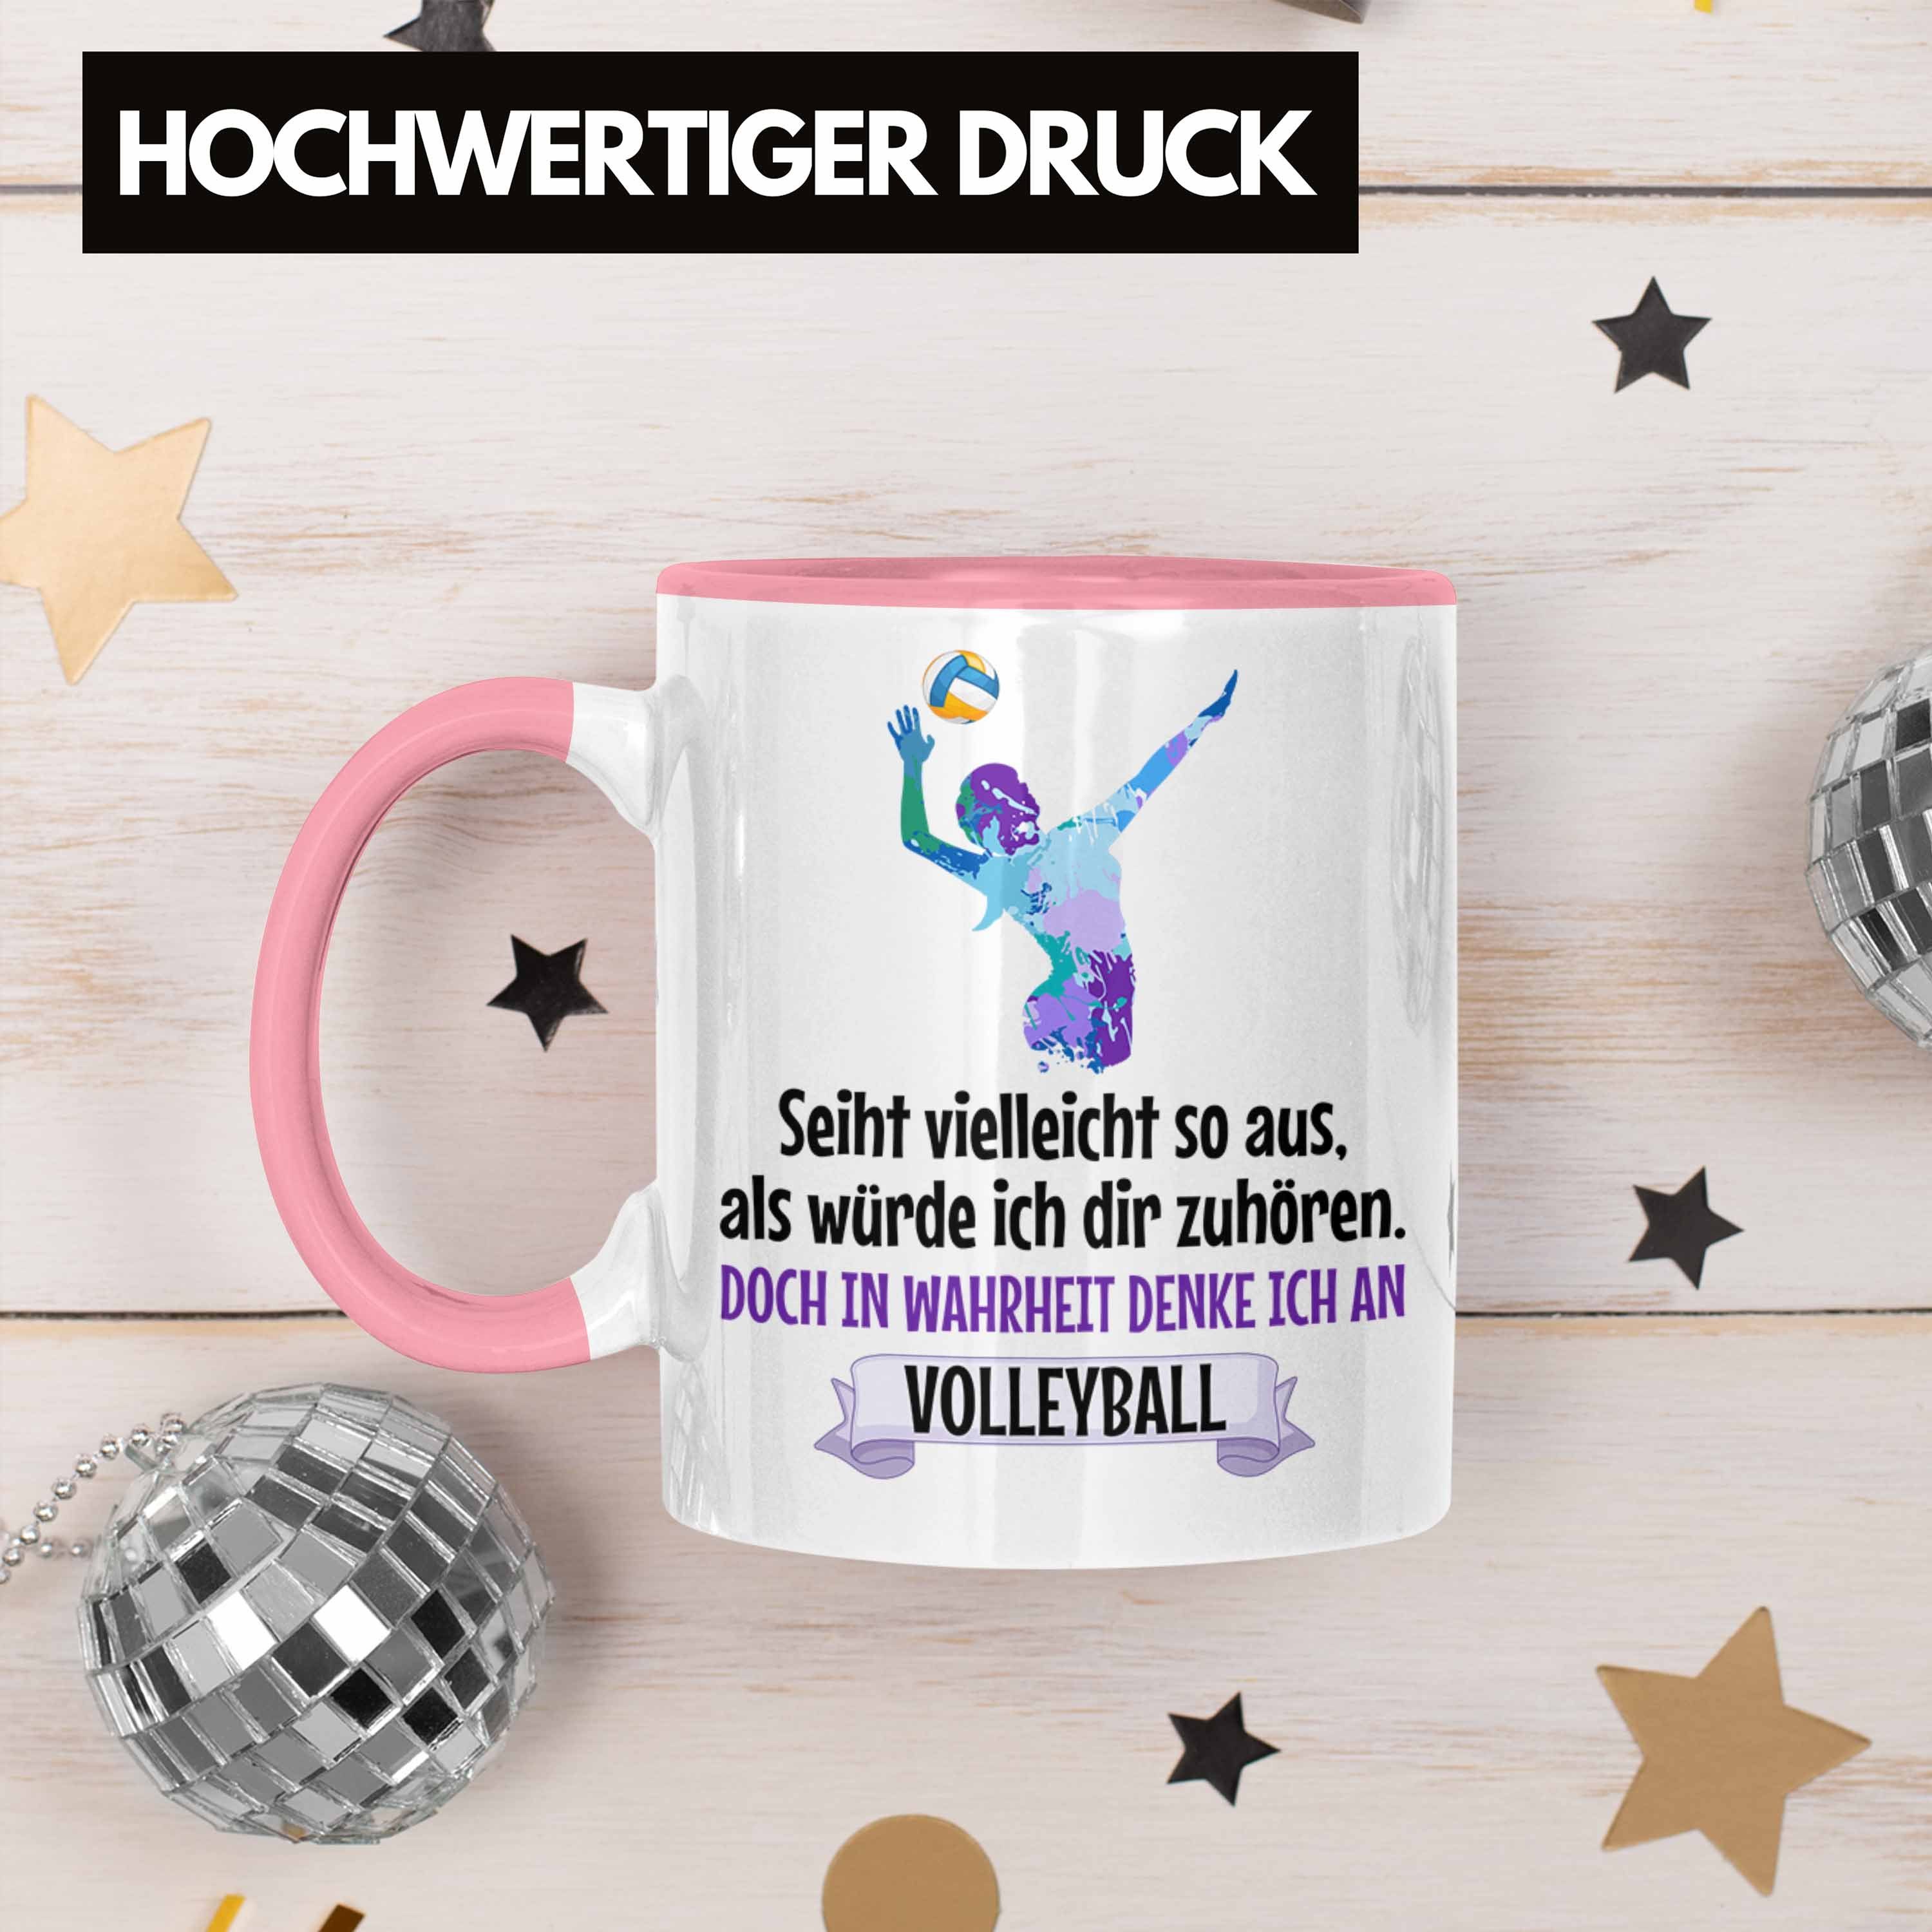 Trendation Herren Volleyball-Spieler Zubehör Kaffee Spielerin Tasse Rosa Mädchen - Geschenk Tasse Coach Trendation Volleyball